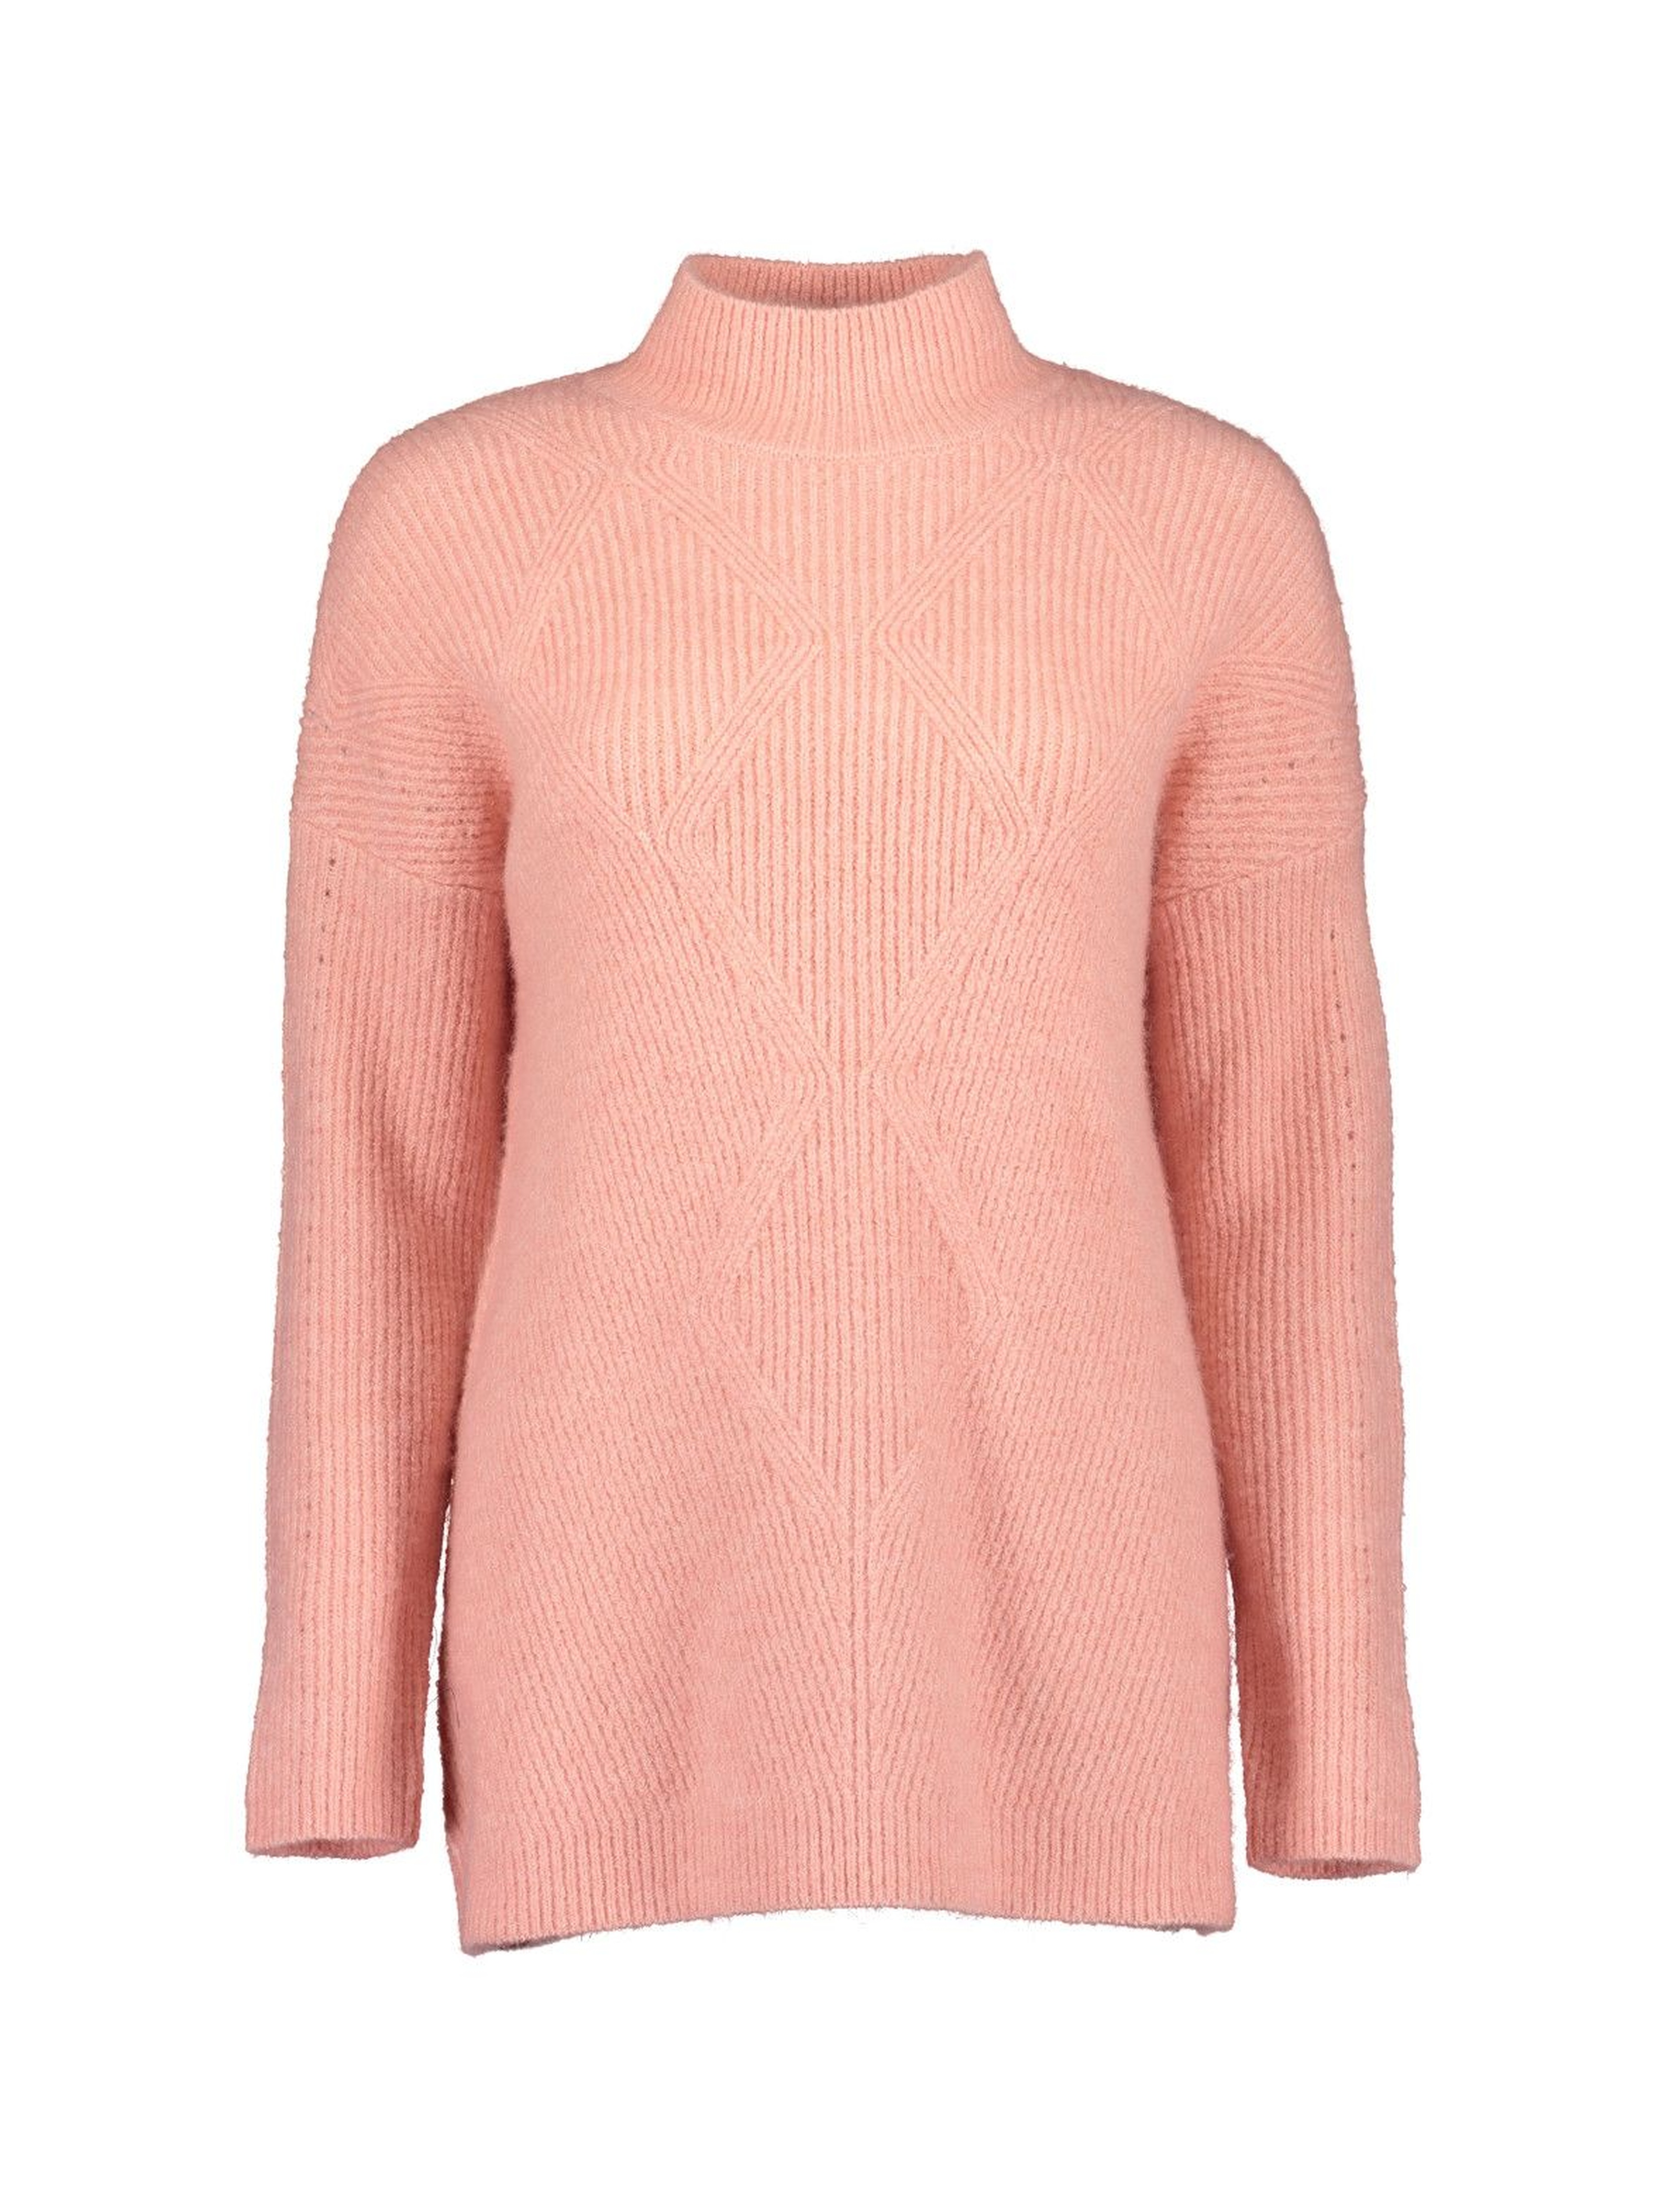 Damski sweter z dzianiny  - różowy